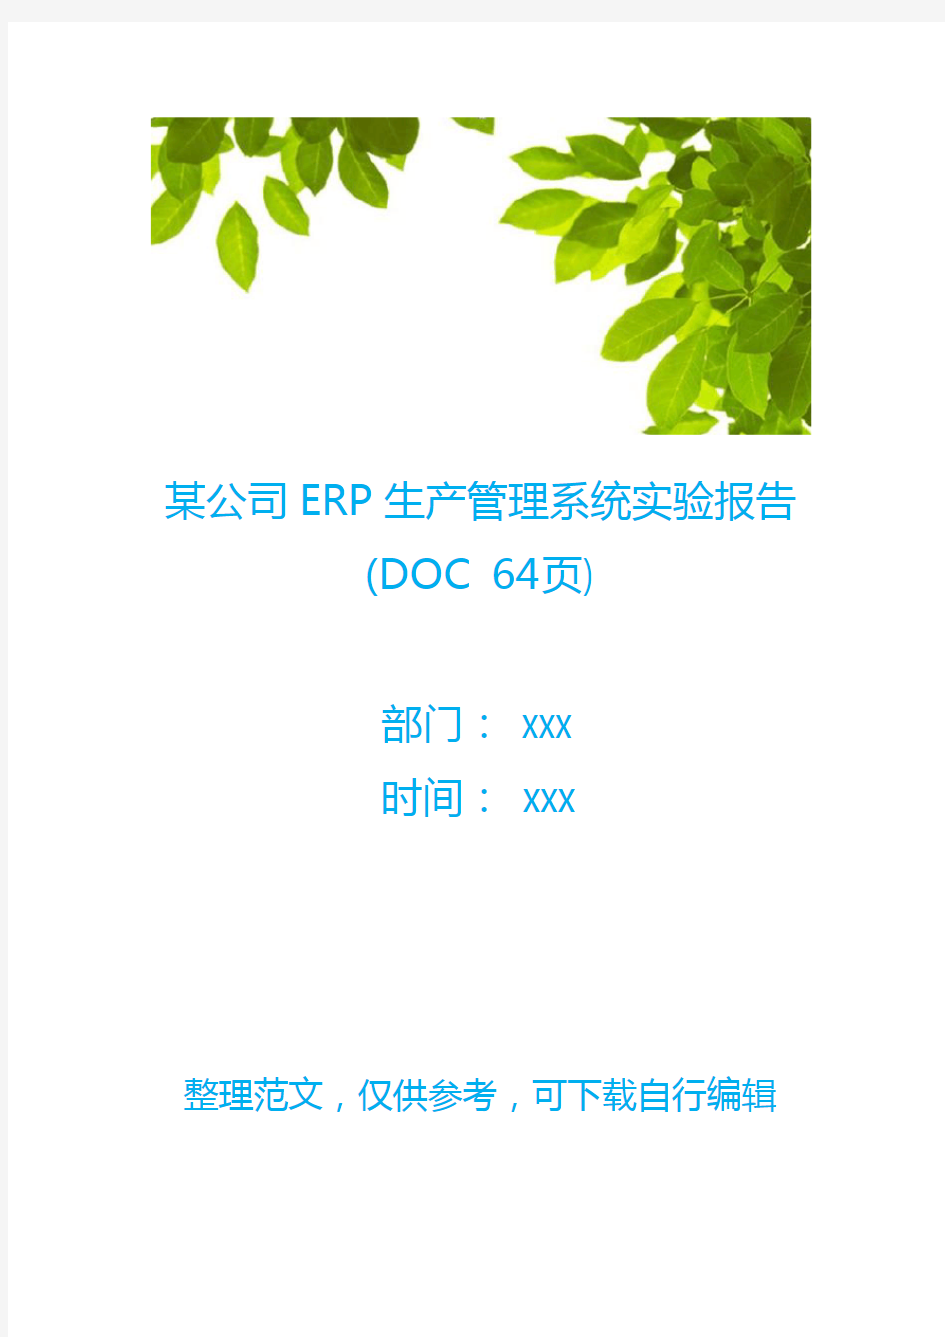 某公司ERP生产管理系统实验报告(DOC 64页)